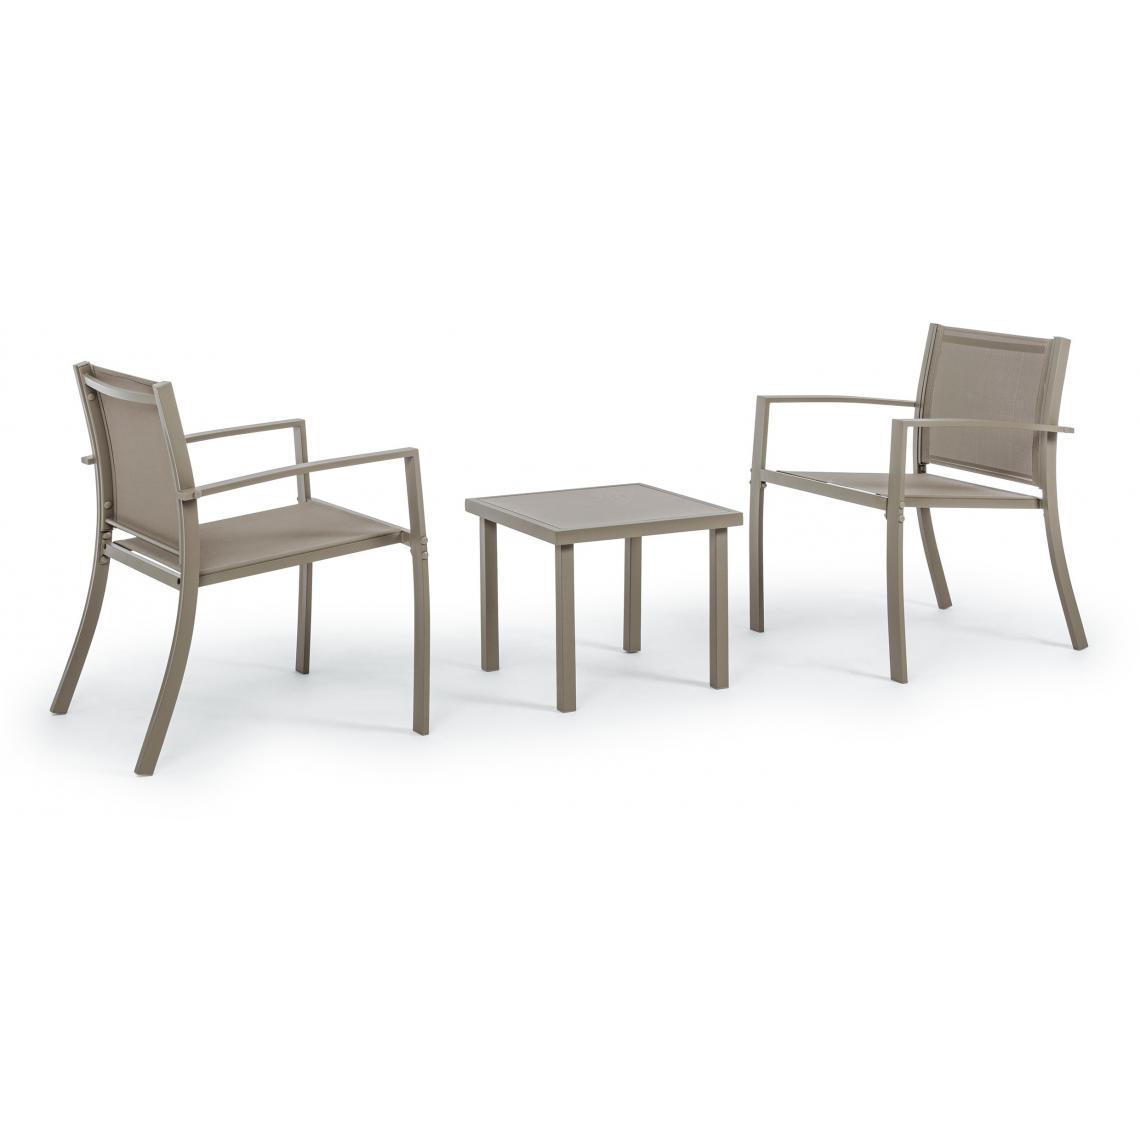 Bizzotto - Canapé extérieur Auri 2 fauteuils + table basse taupe - Fauteuil de jardin